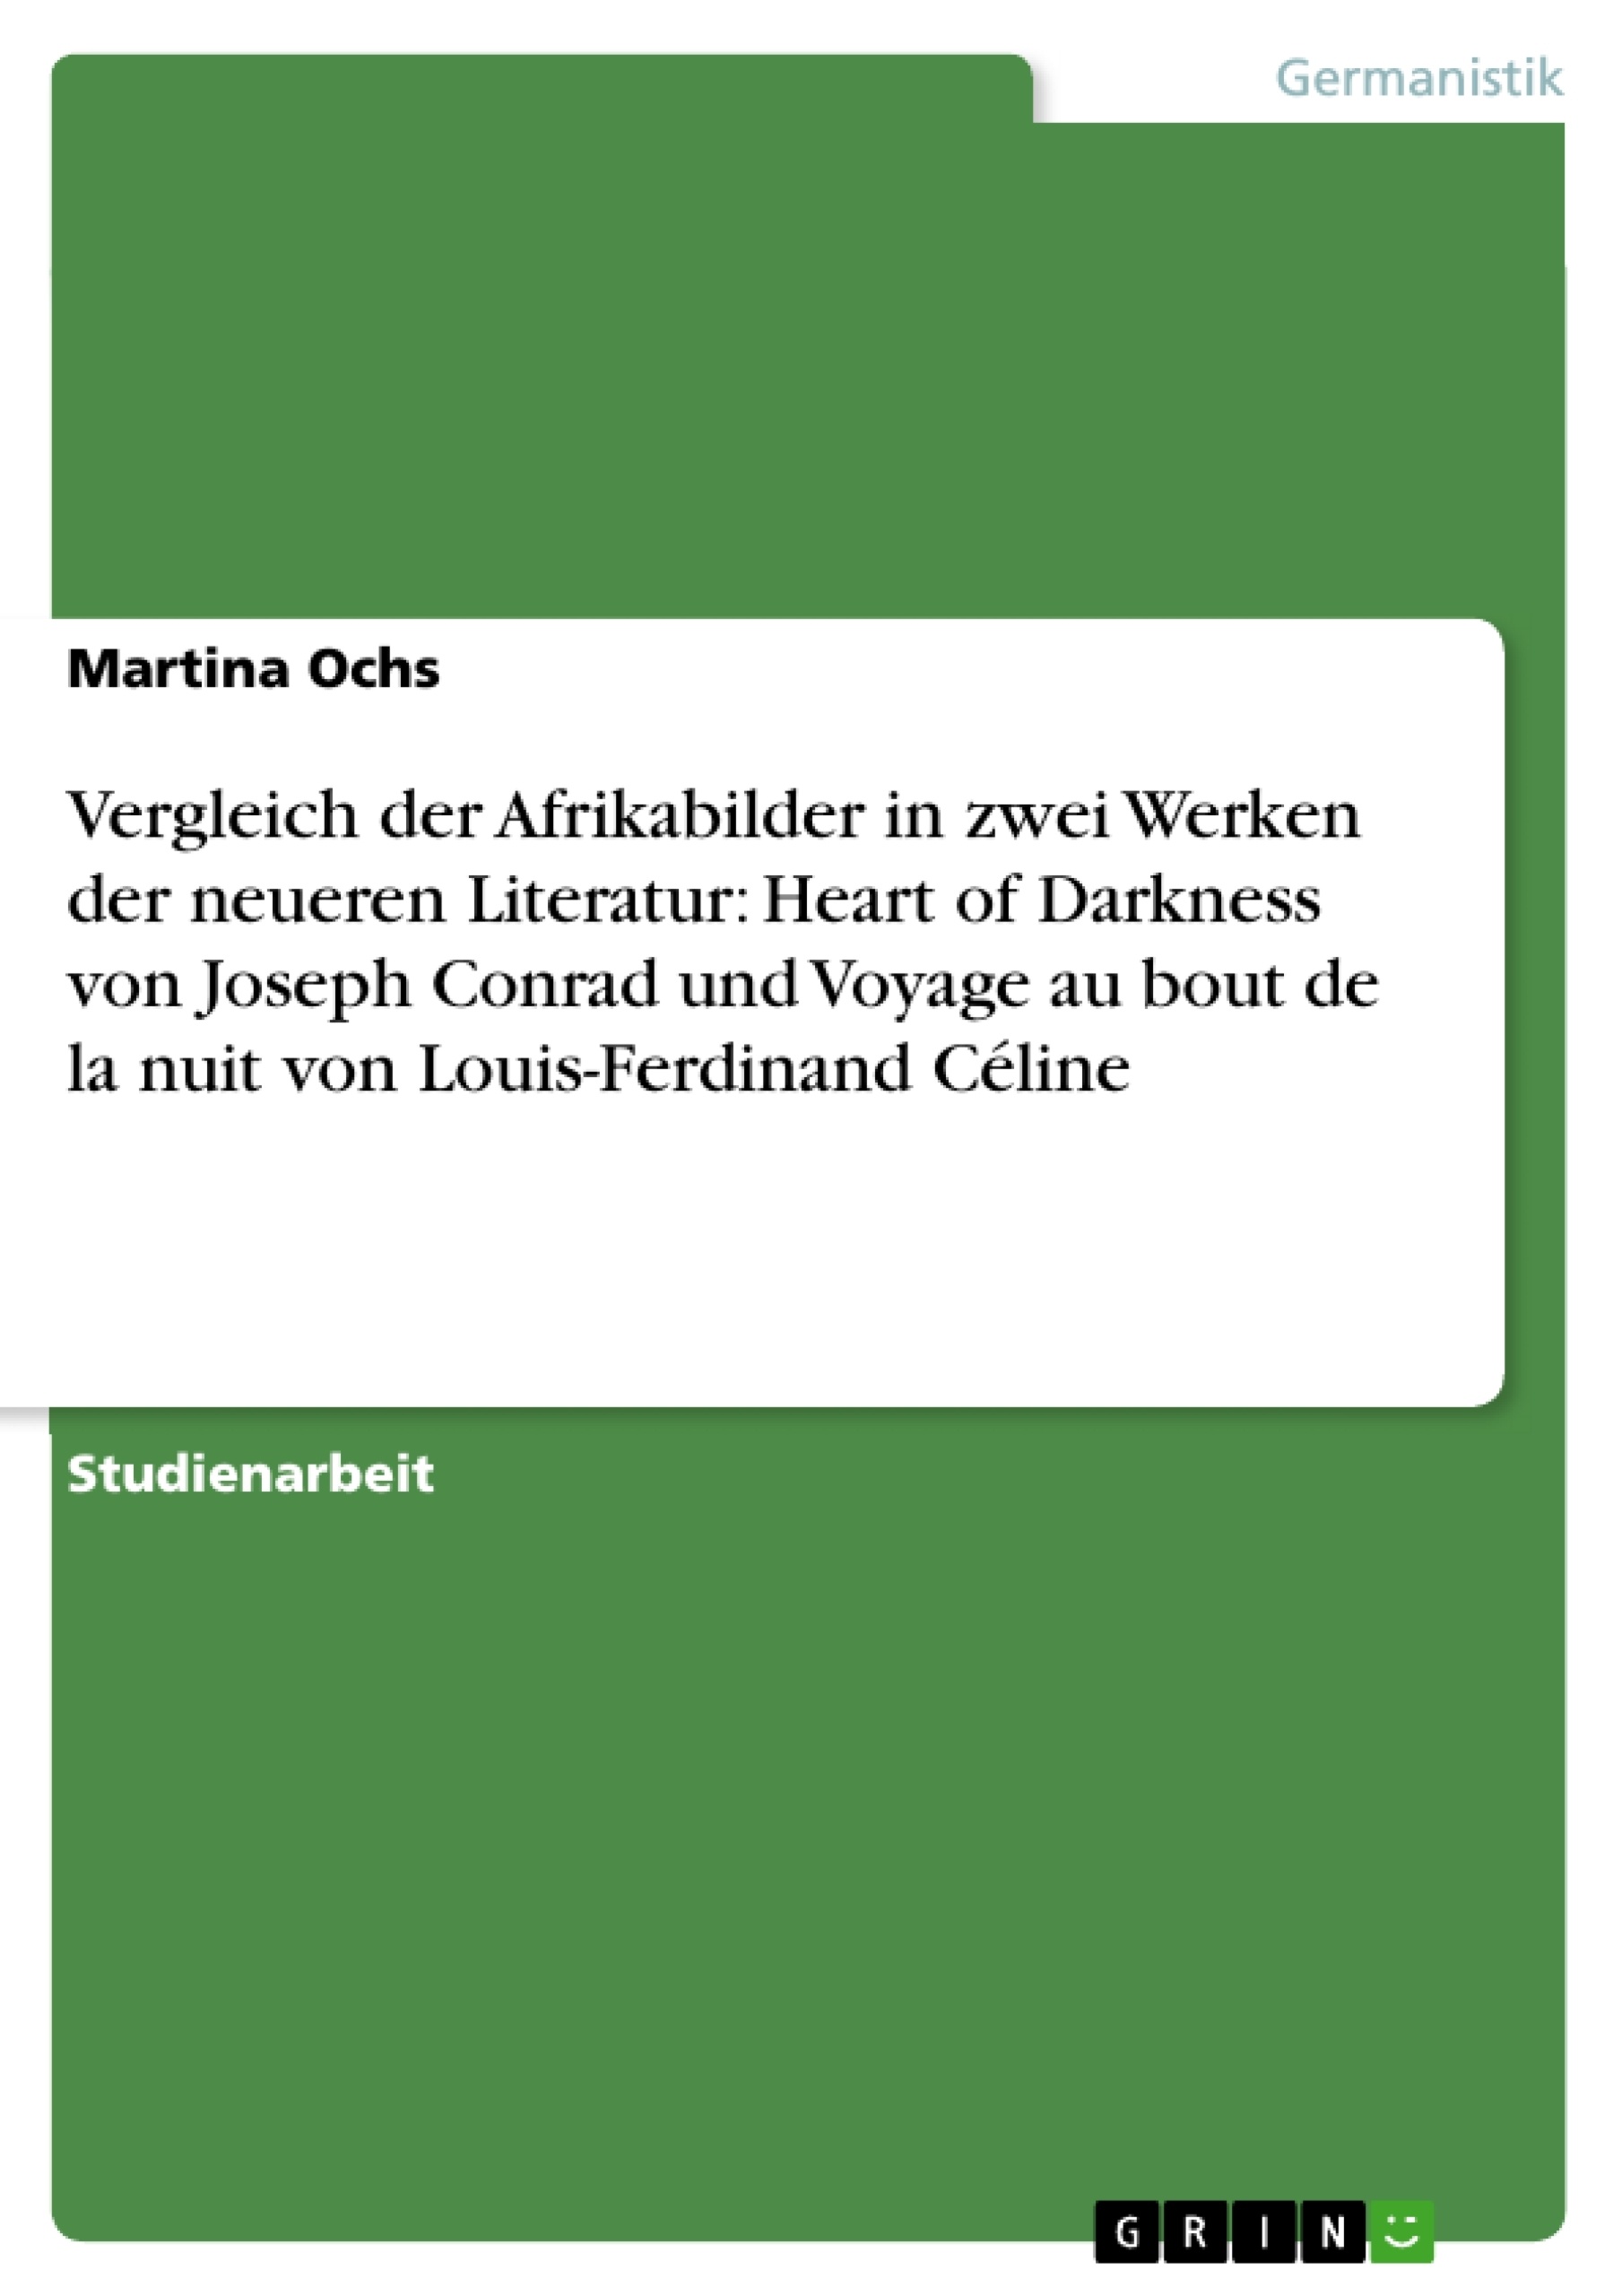 Titel: Vergleich der Afrikabilder in zwei Werken der neueren Literatur:  Heart of Darkness  von Joseph Conrad und  Voyage au bout de la nuit  von Louis-Ferdinand Céline